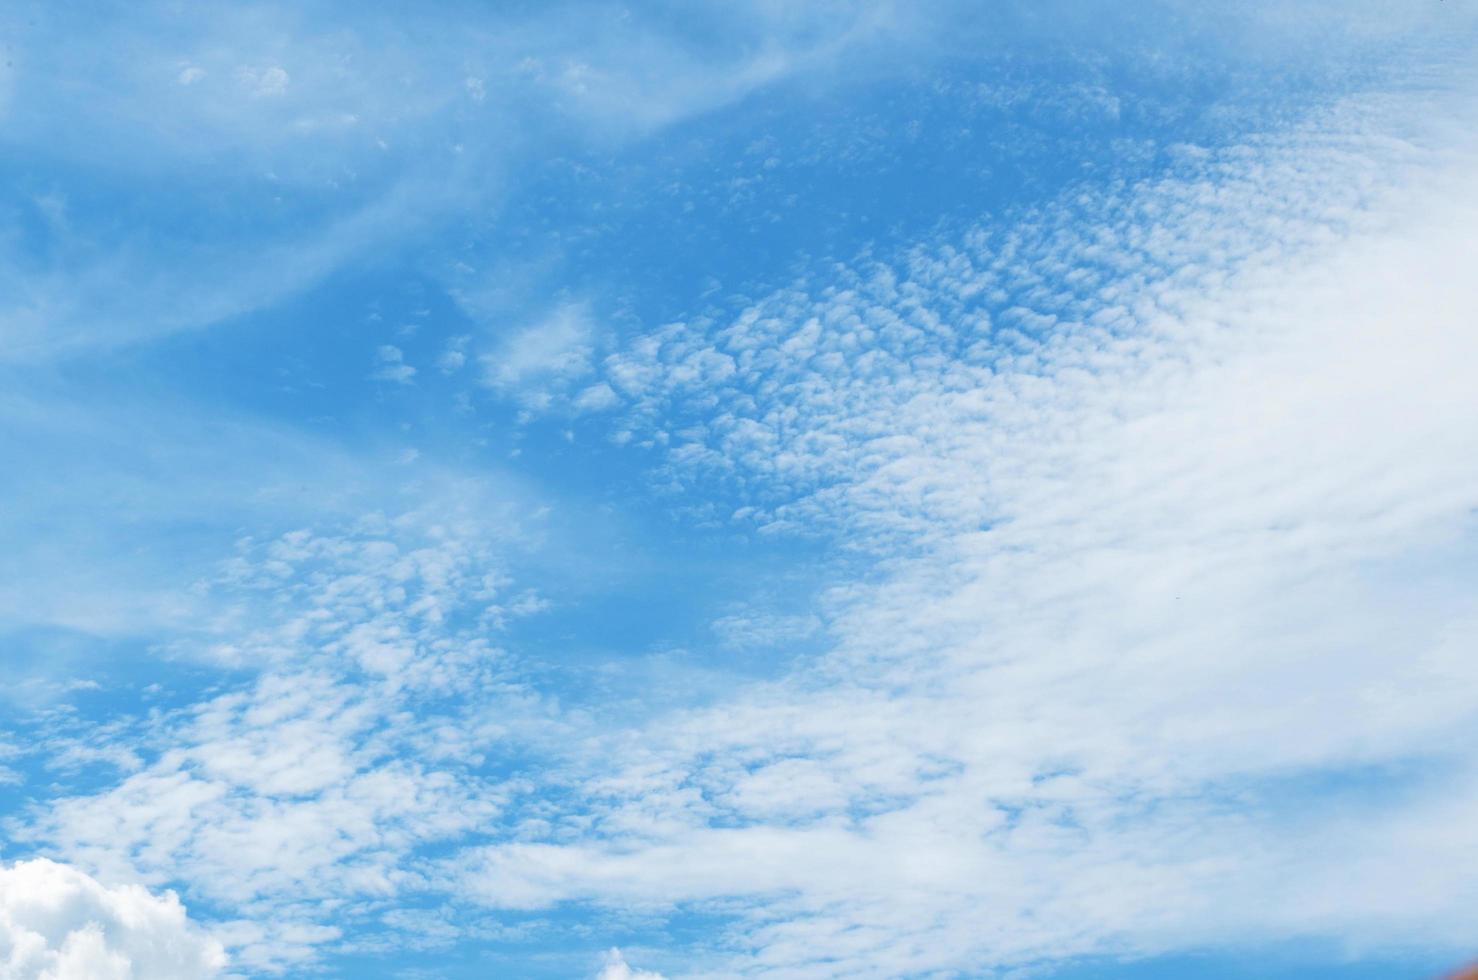 cielo blu pulito e nuvole bianche sullo sfondo del cielo con spazio per la decorazione. e utilizzato per creare carta da parati o portare a lavorare nella progettazione grafica. foto